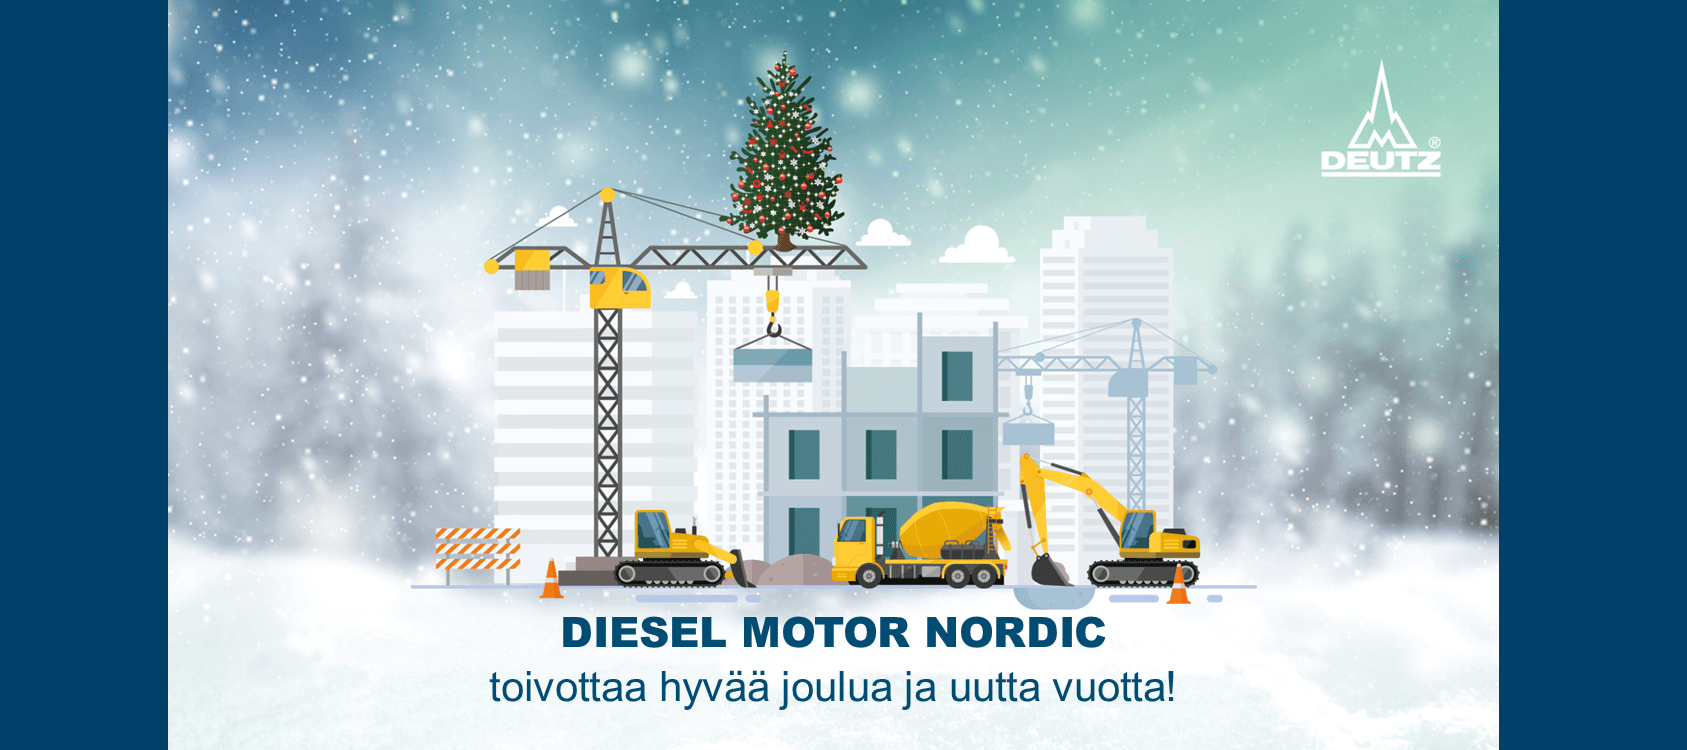 Diesel Motor Nordic toivottaa hyvää joulua ja uutta vuotta!